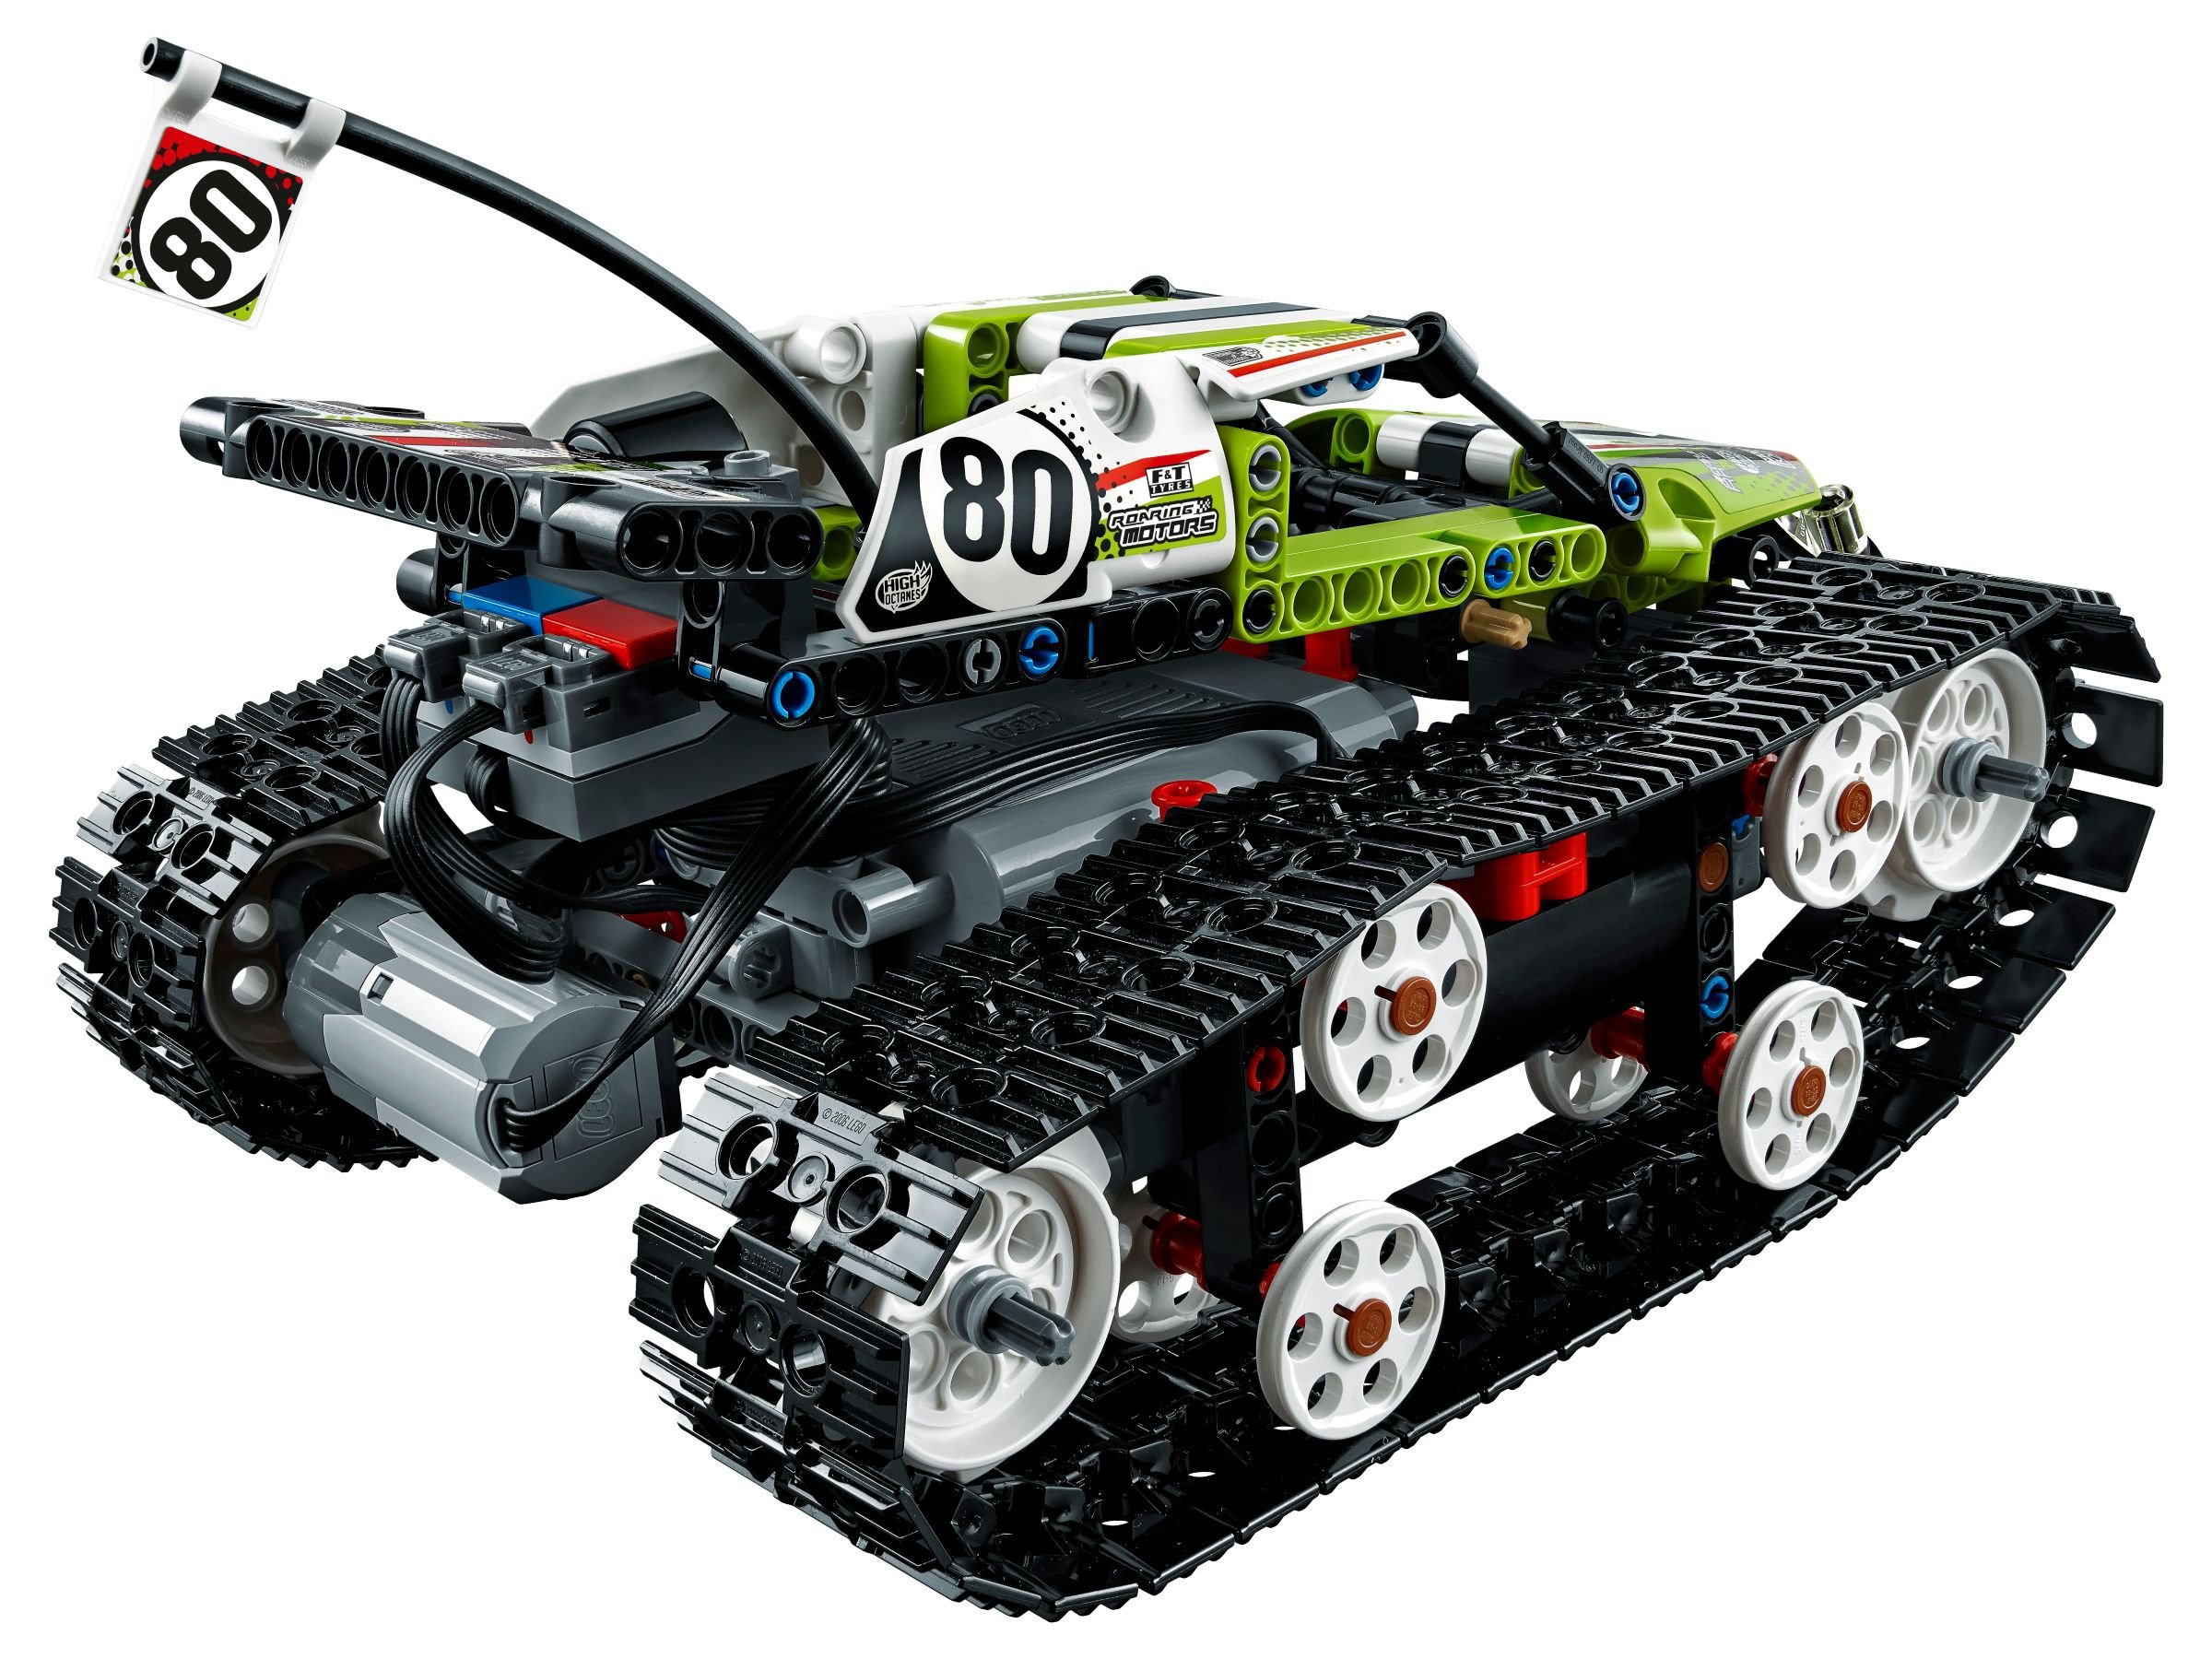 LEGO Technic 42065 Ferngesteuerter Tracked Racer LEGO_42065_alt3.jpg